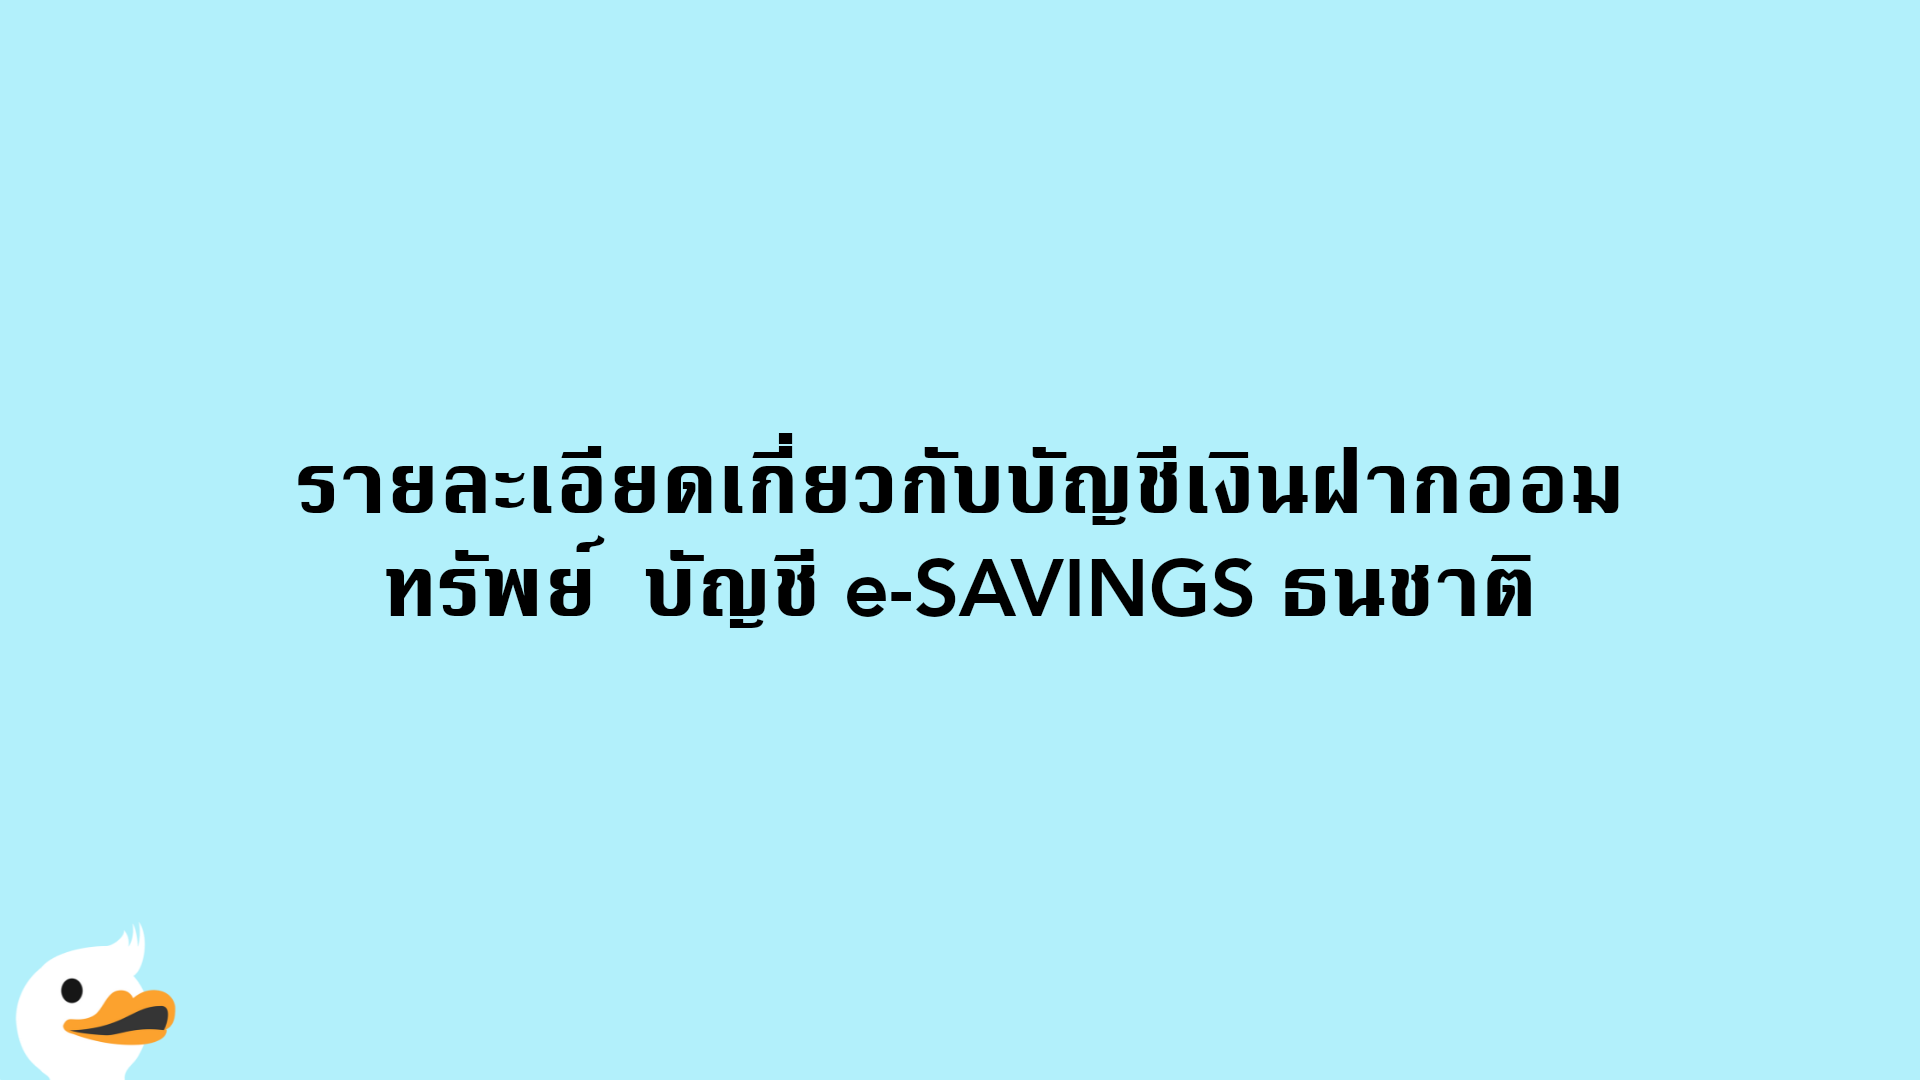 รายละเอียดเกี่ยวกับบัญชีเงินฝากออมทรัพย์  บัญชี e-SAVINGS ธนชาติ